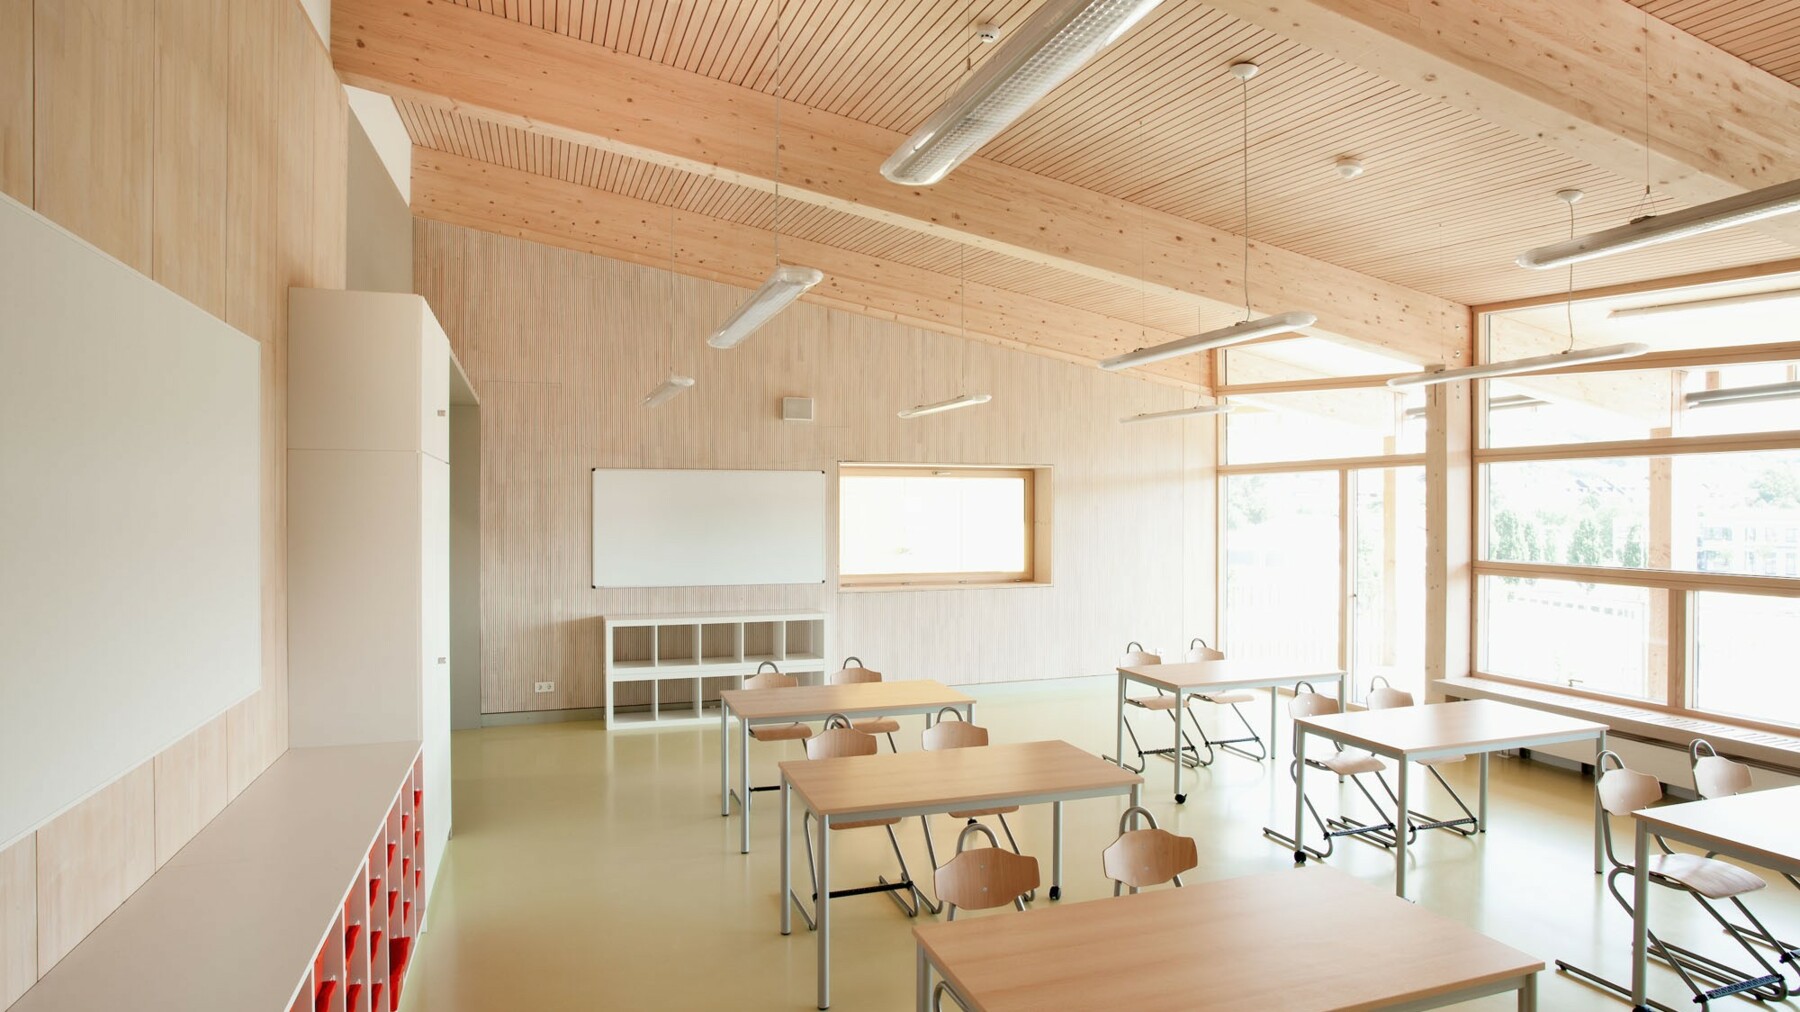 Die verbauten LIGNO® Elemente sind im Klassenzimmer als edle Holzoberflächen in Weißtanne sichtbar, an der Decke mit integriertem Akustikprofil für eine optimale Raumakustik.